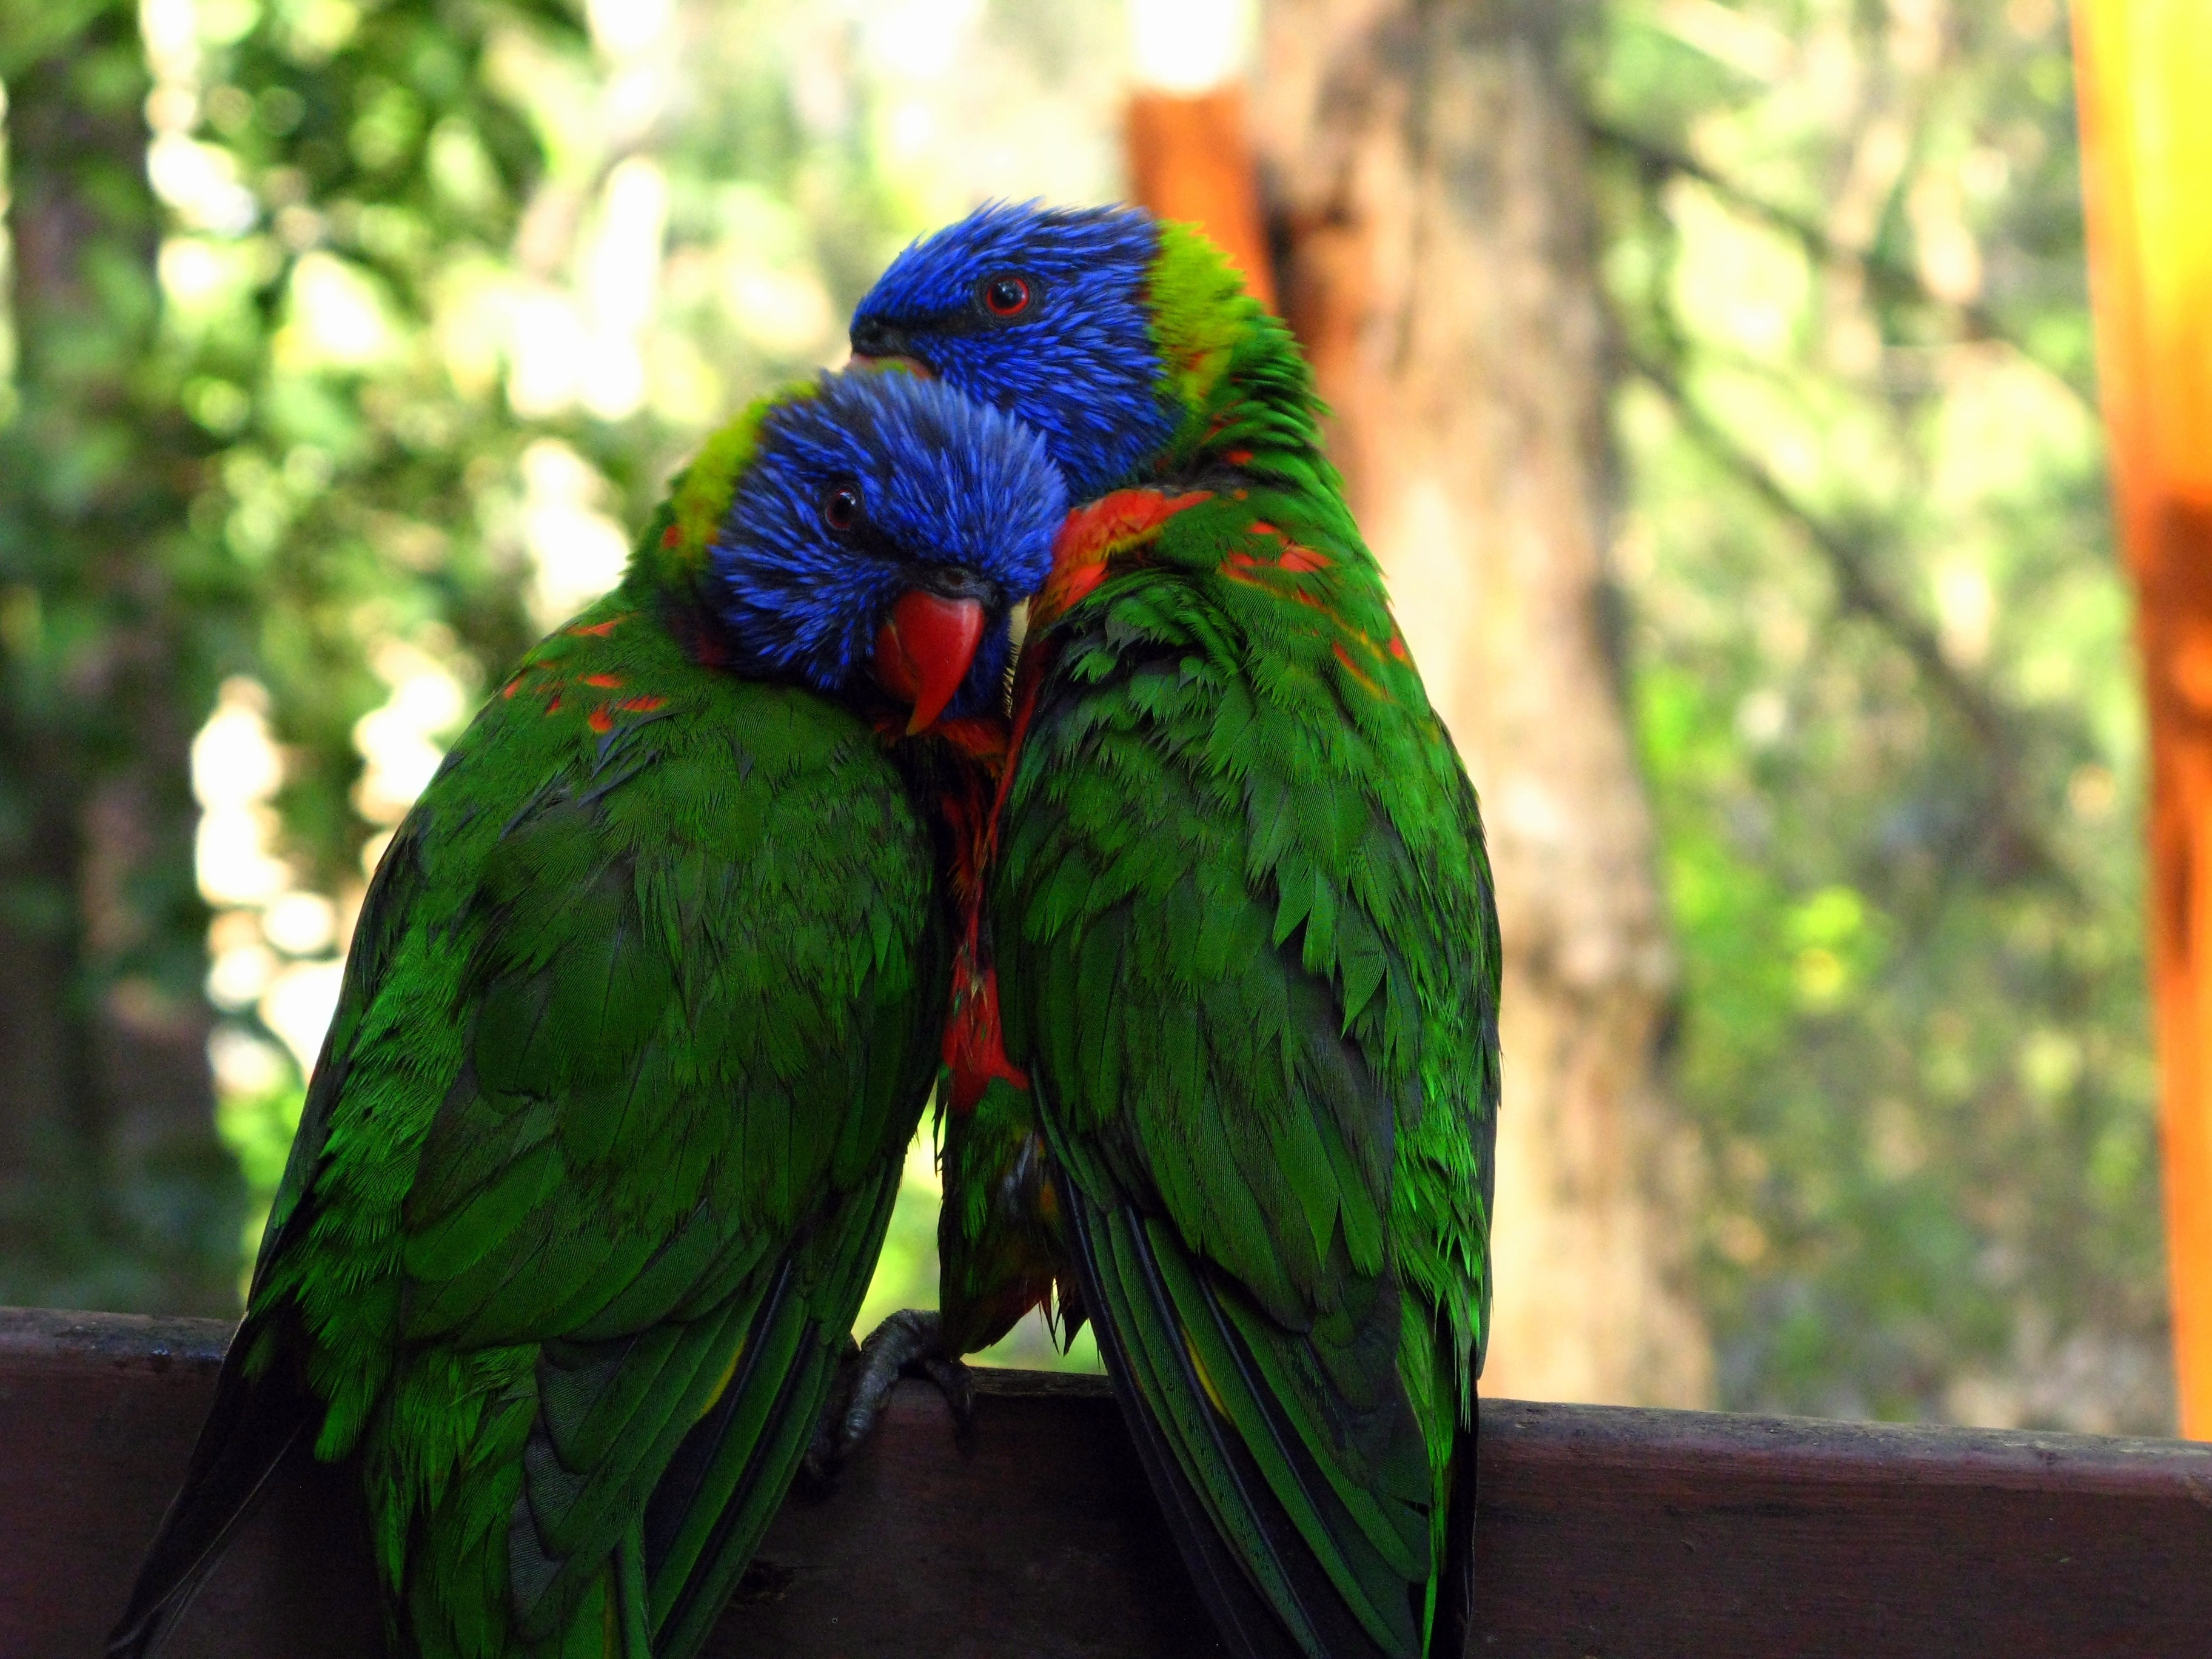 Rainbow Lorikeet, Love, Zoo, Couple, parrot, bird